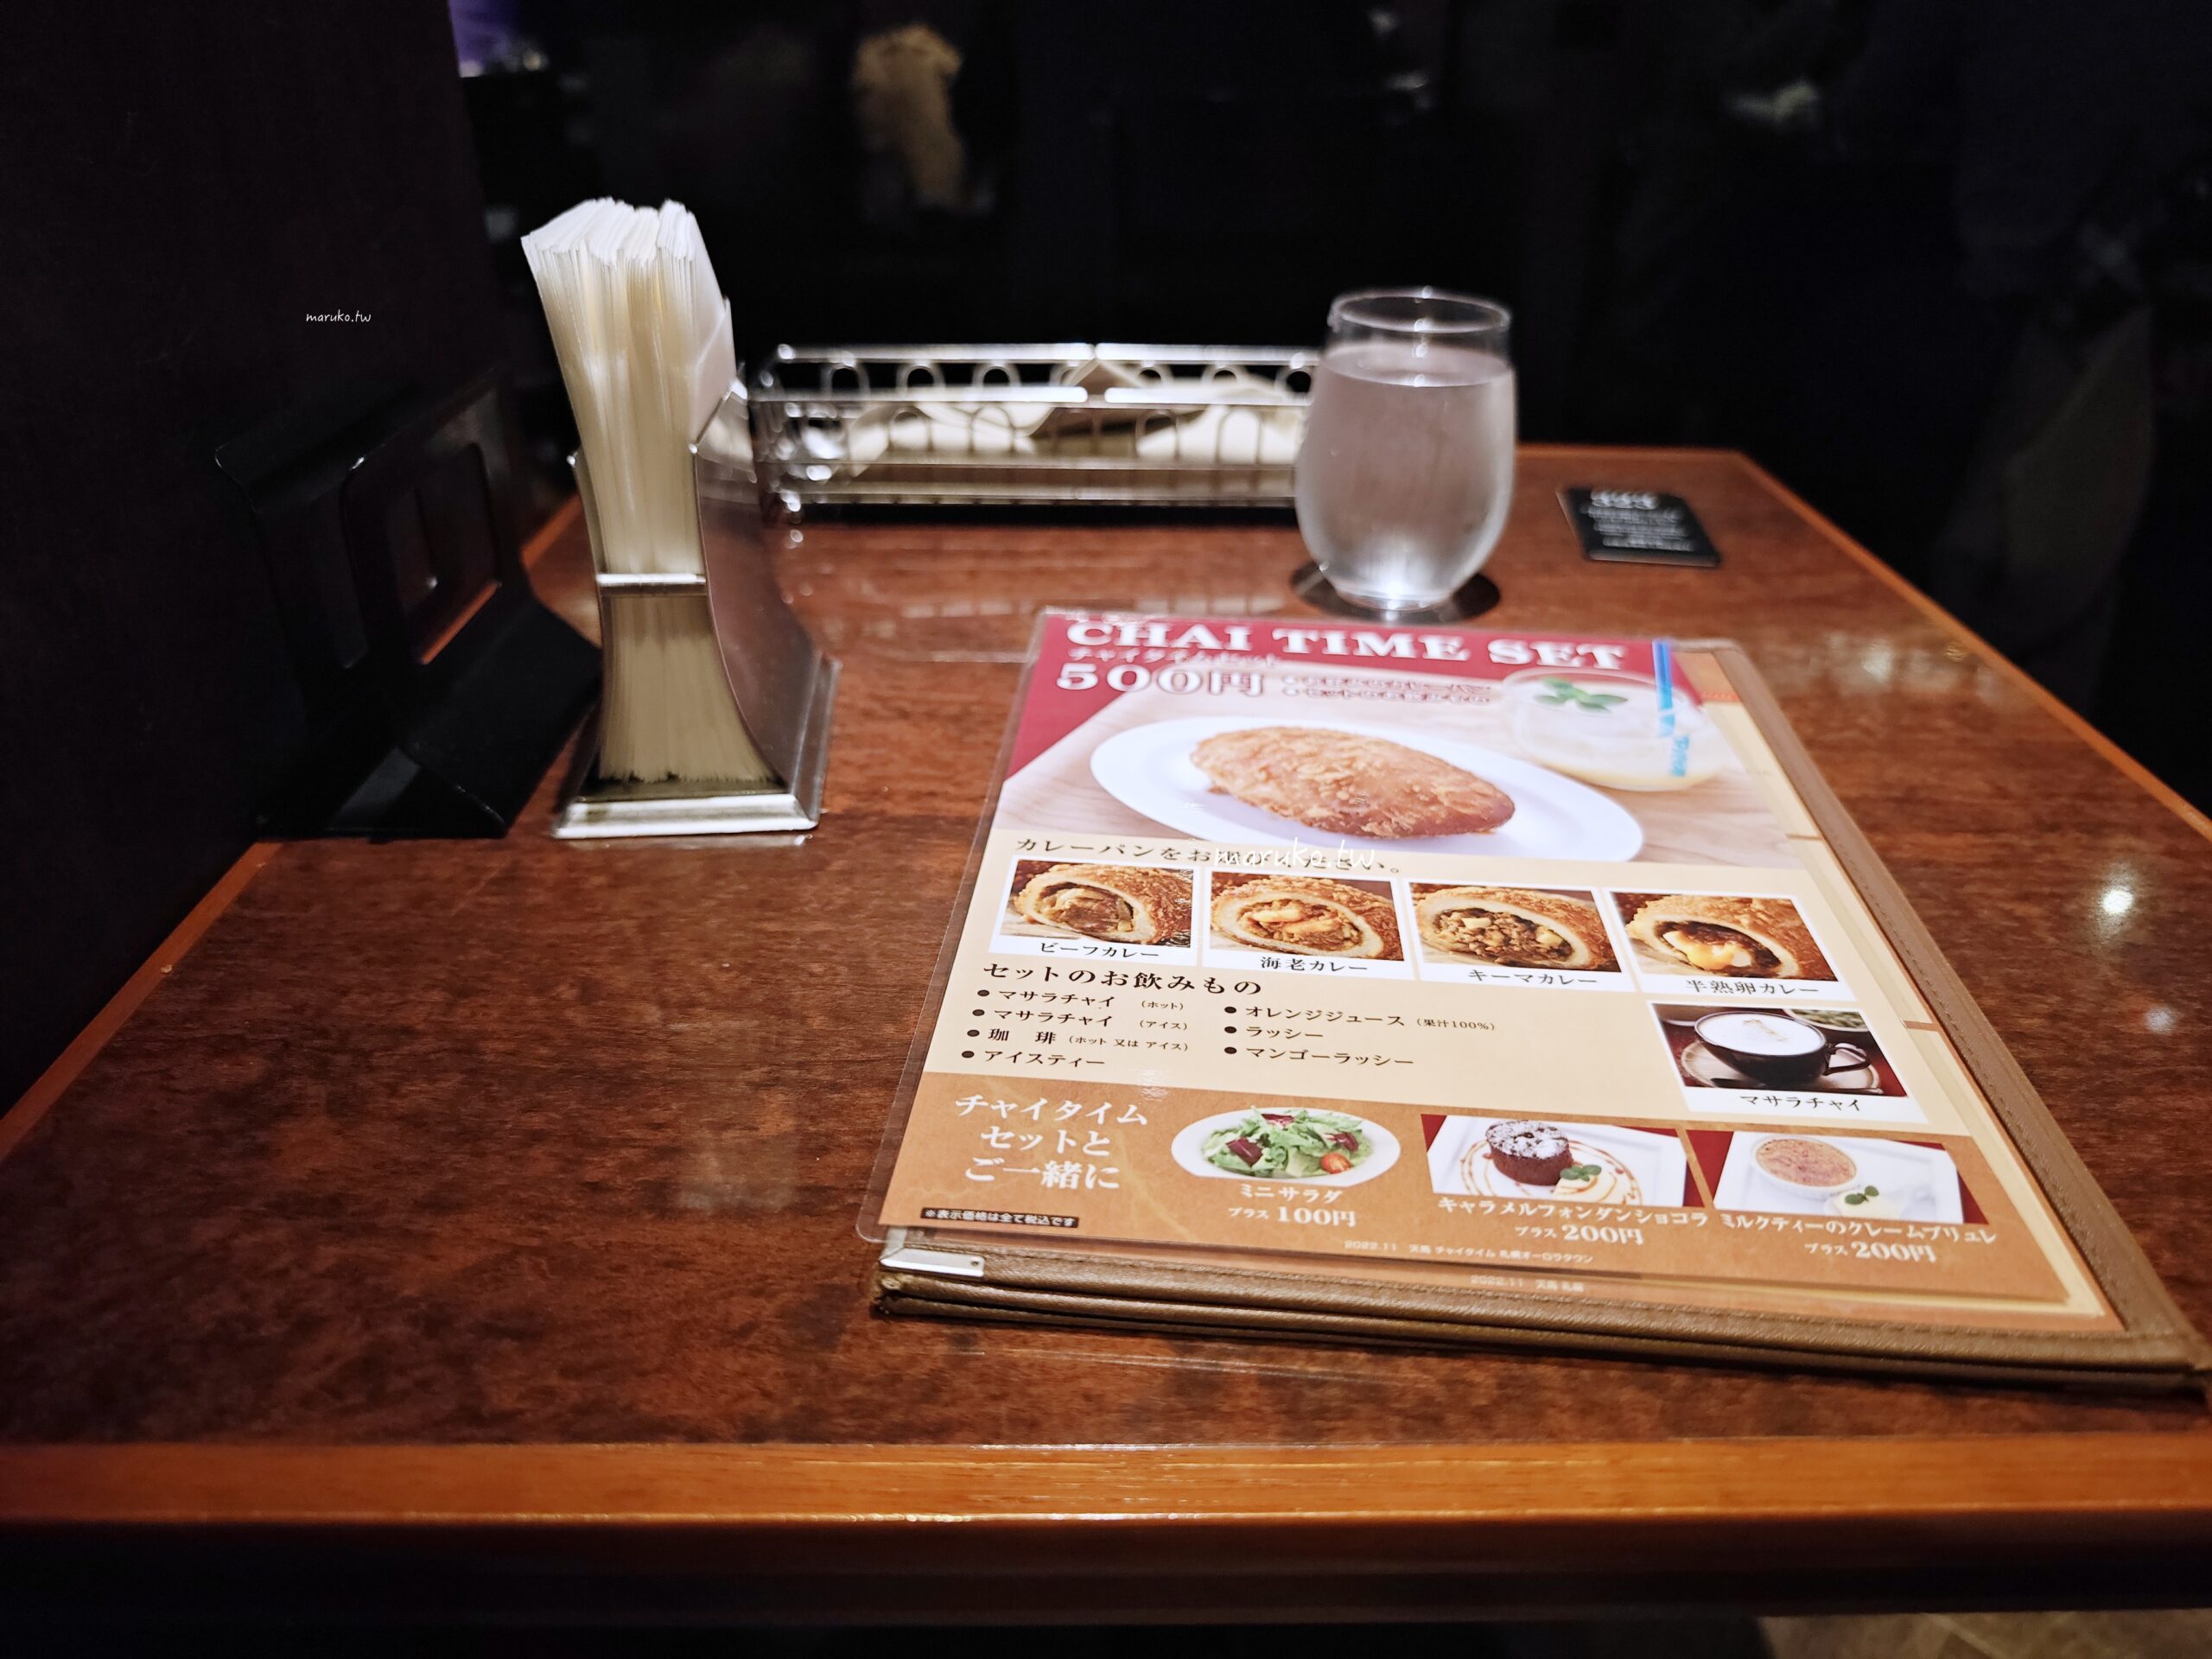 【札幌】天馬咖哩 (Temma Curry) 半熟卵咖哩麵包名店，與星乃咖啡同集團的連鎖咖哩店！ @Maruko與美食有個約會